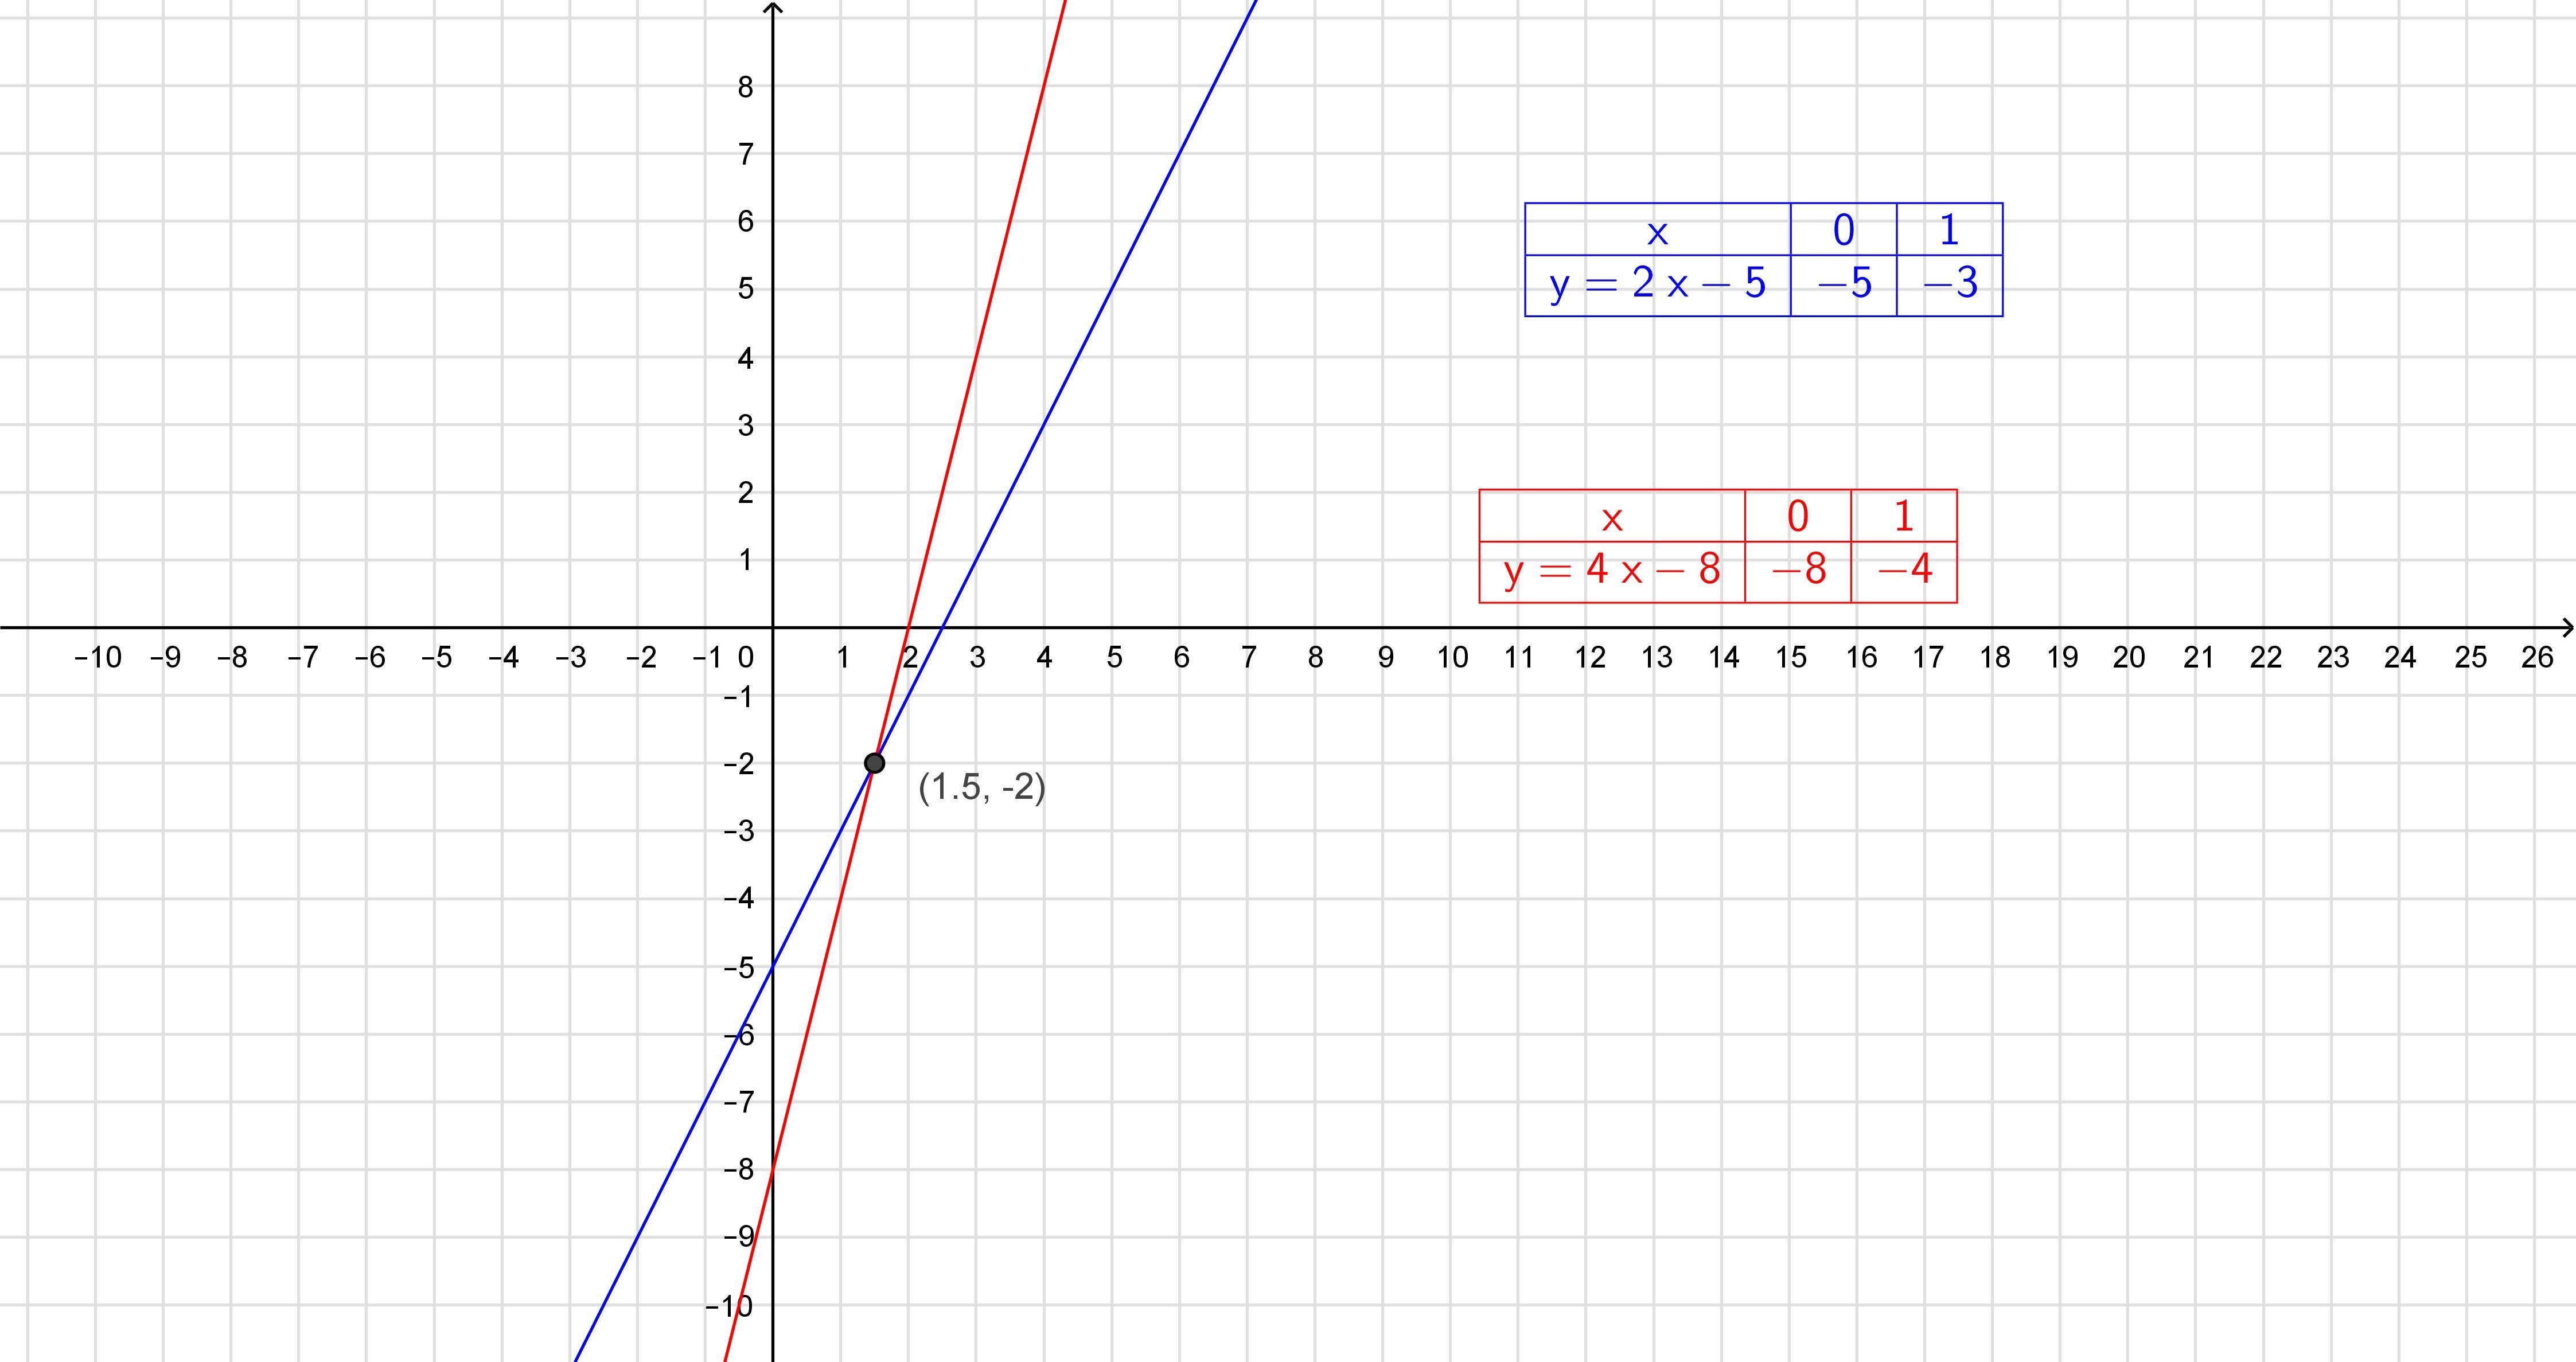 Y 3x 0 5 график. Функция y=x4. Y 5x 2 график функции. Y 5 X график функции. Y x2 2x 5 график функции.